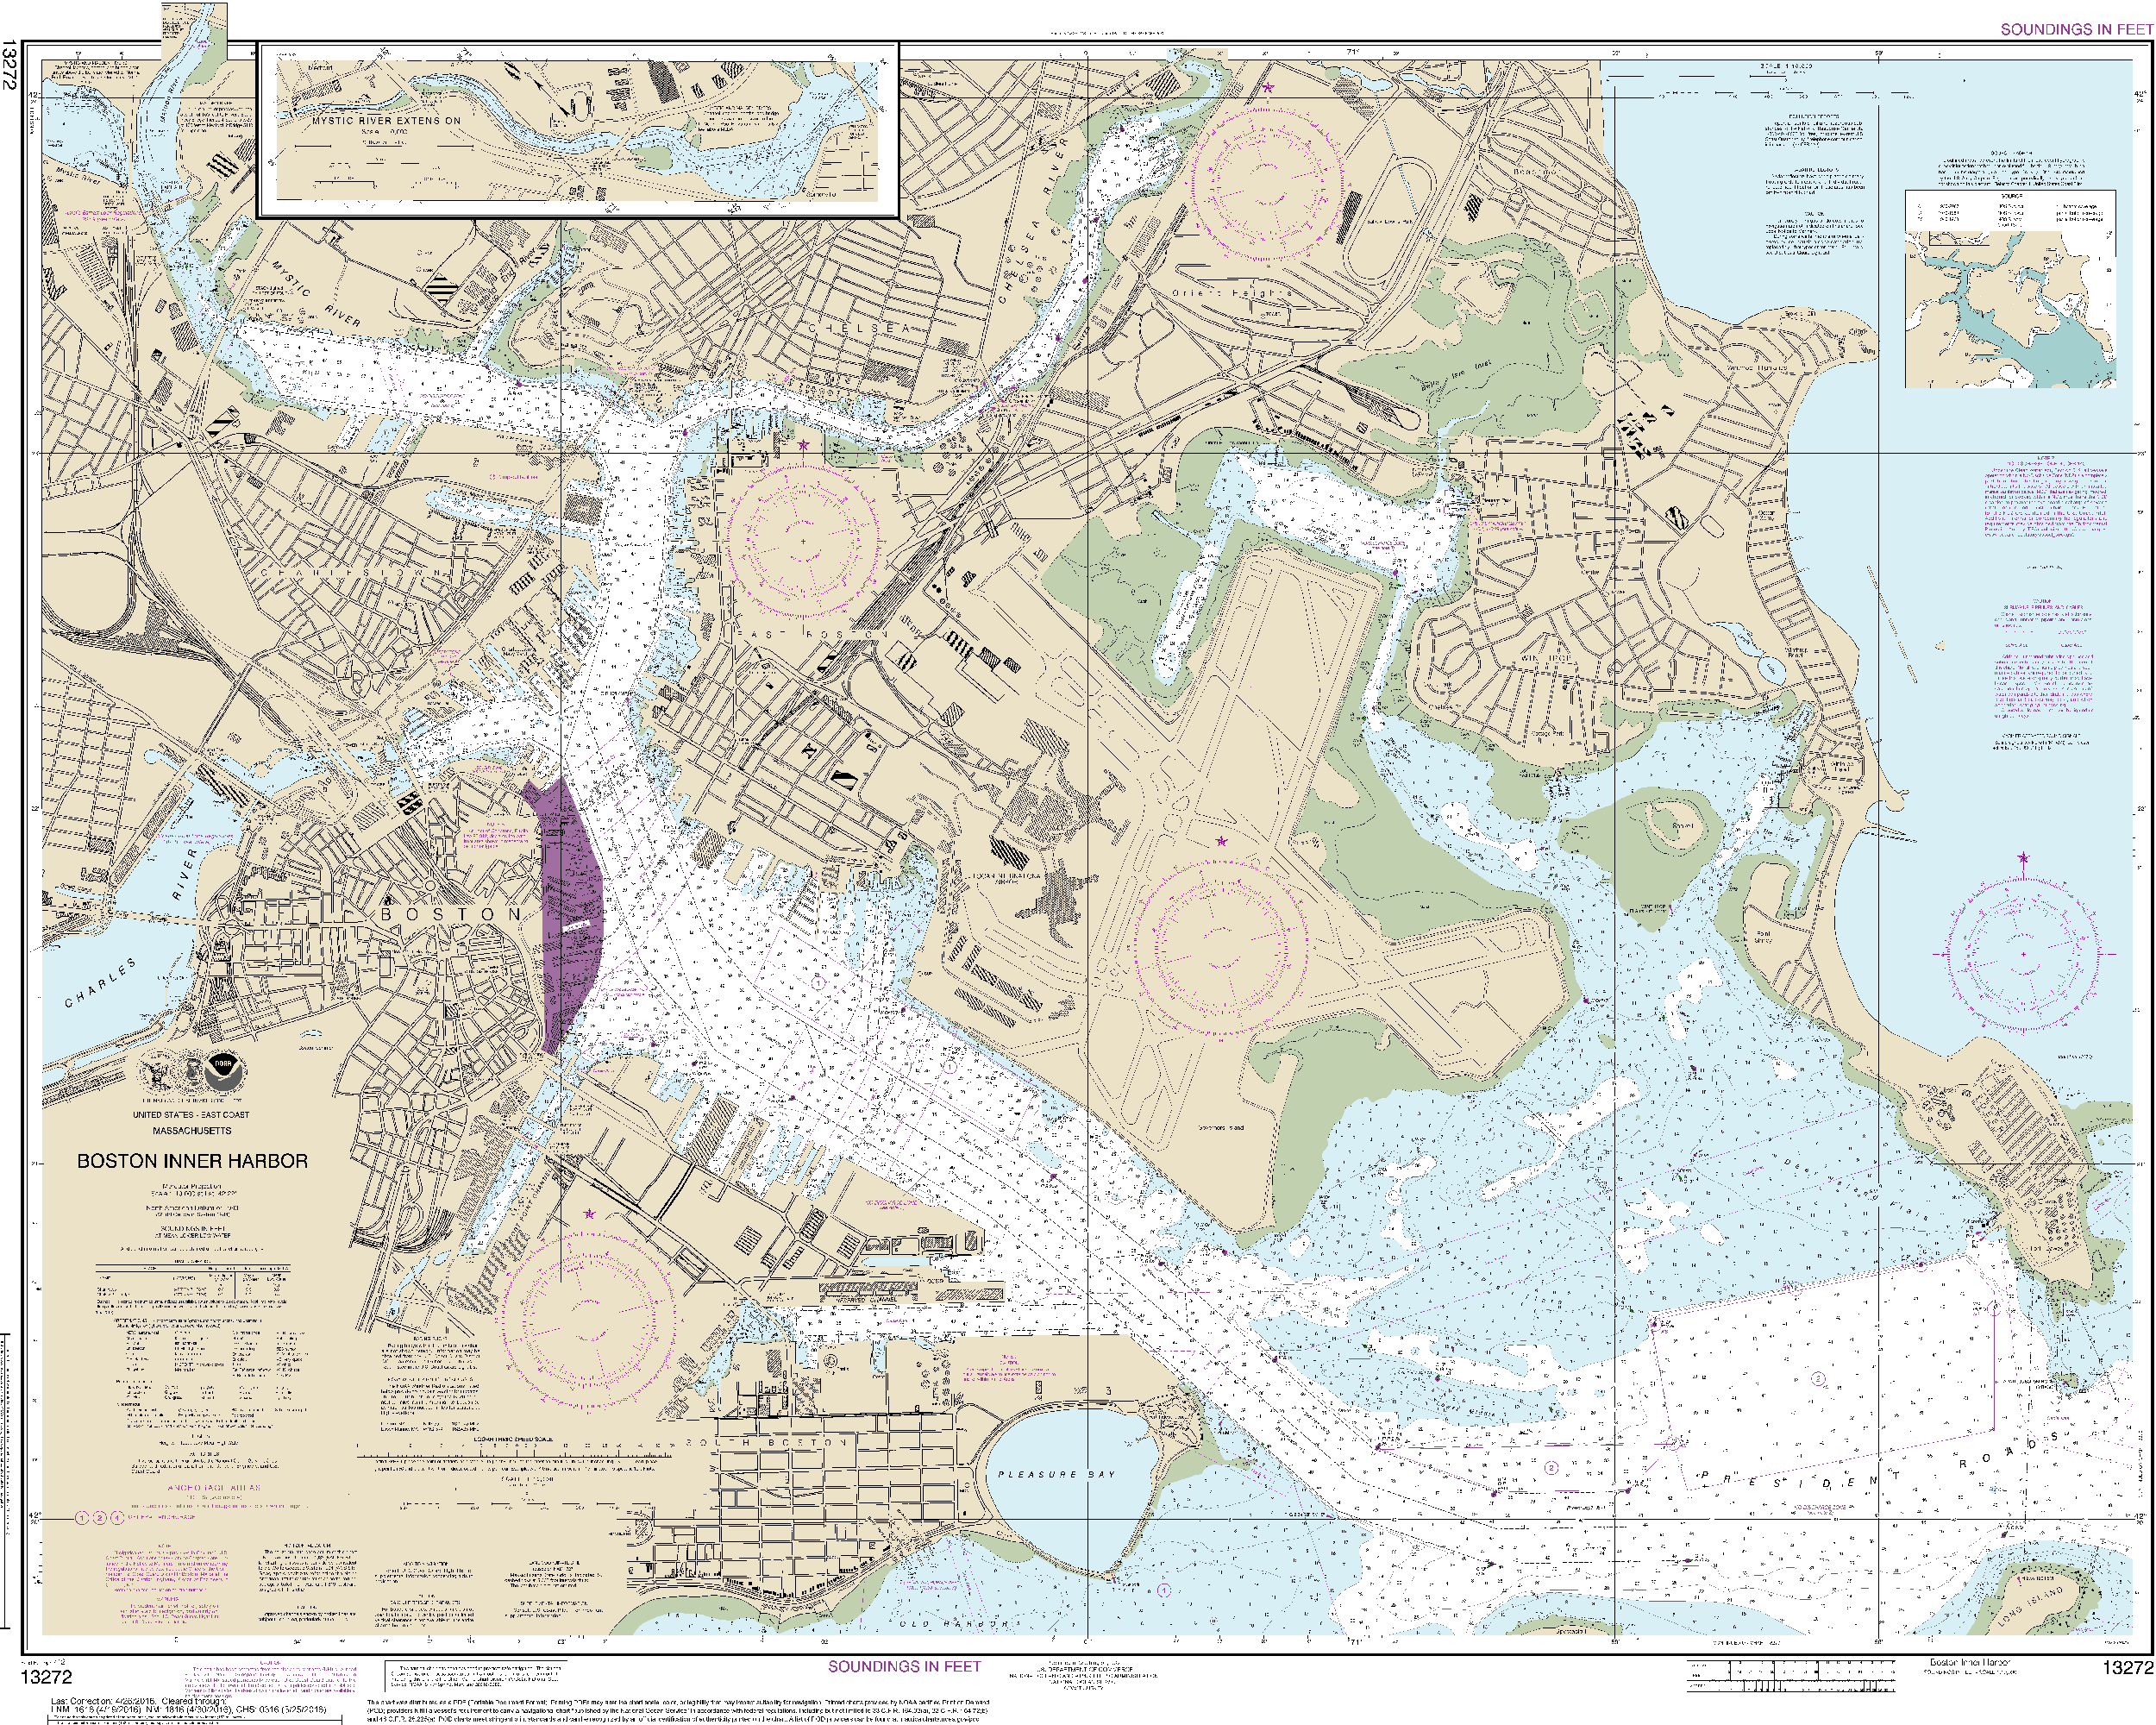 NOAA Nautical Chart 13272: Boston Inner Harbor